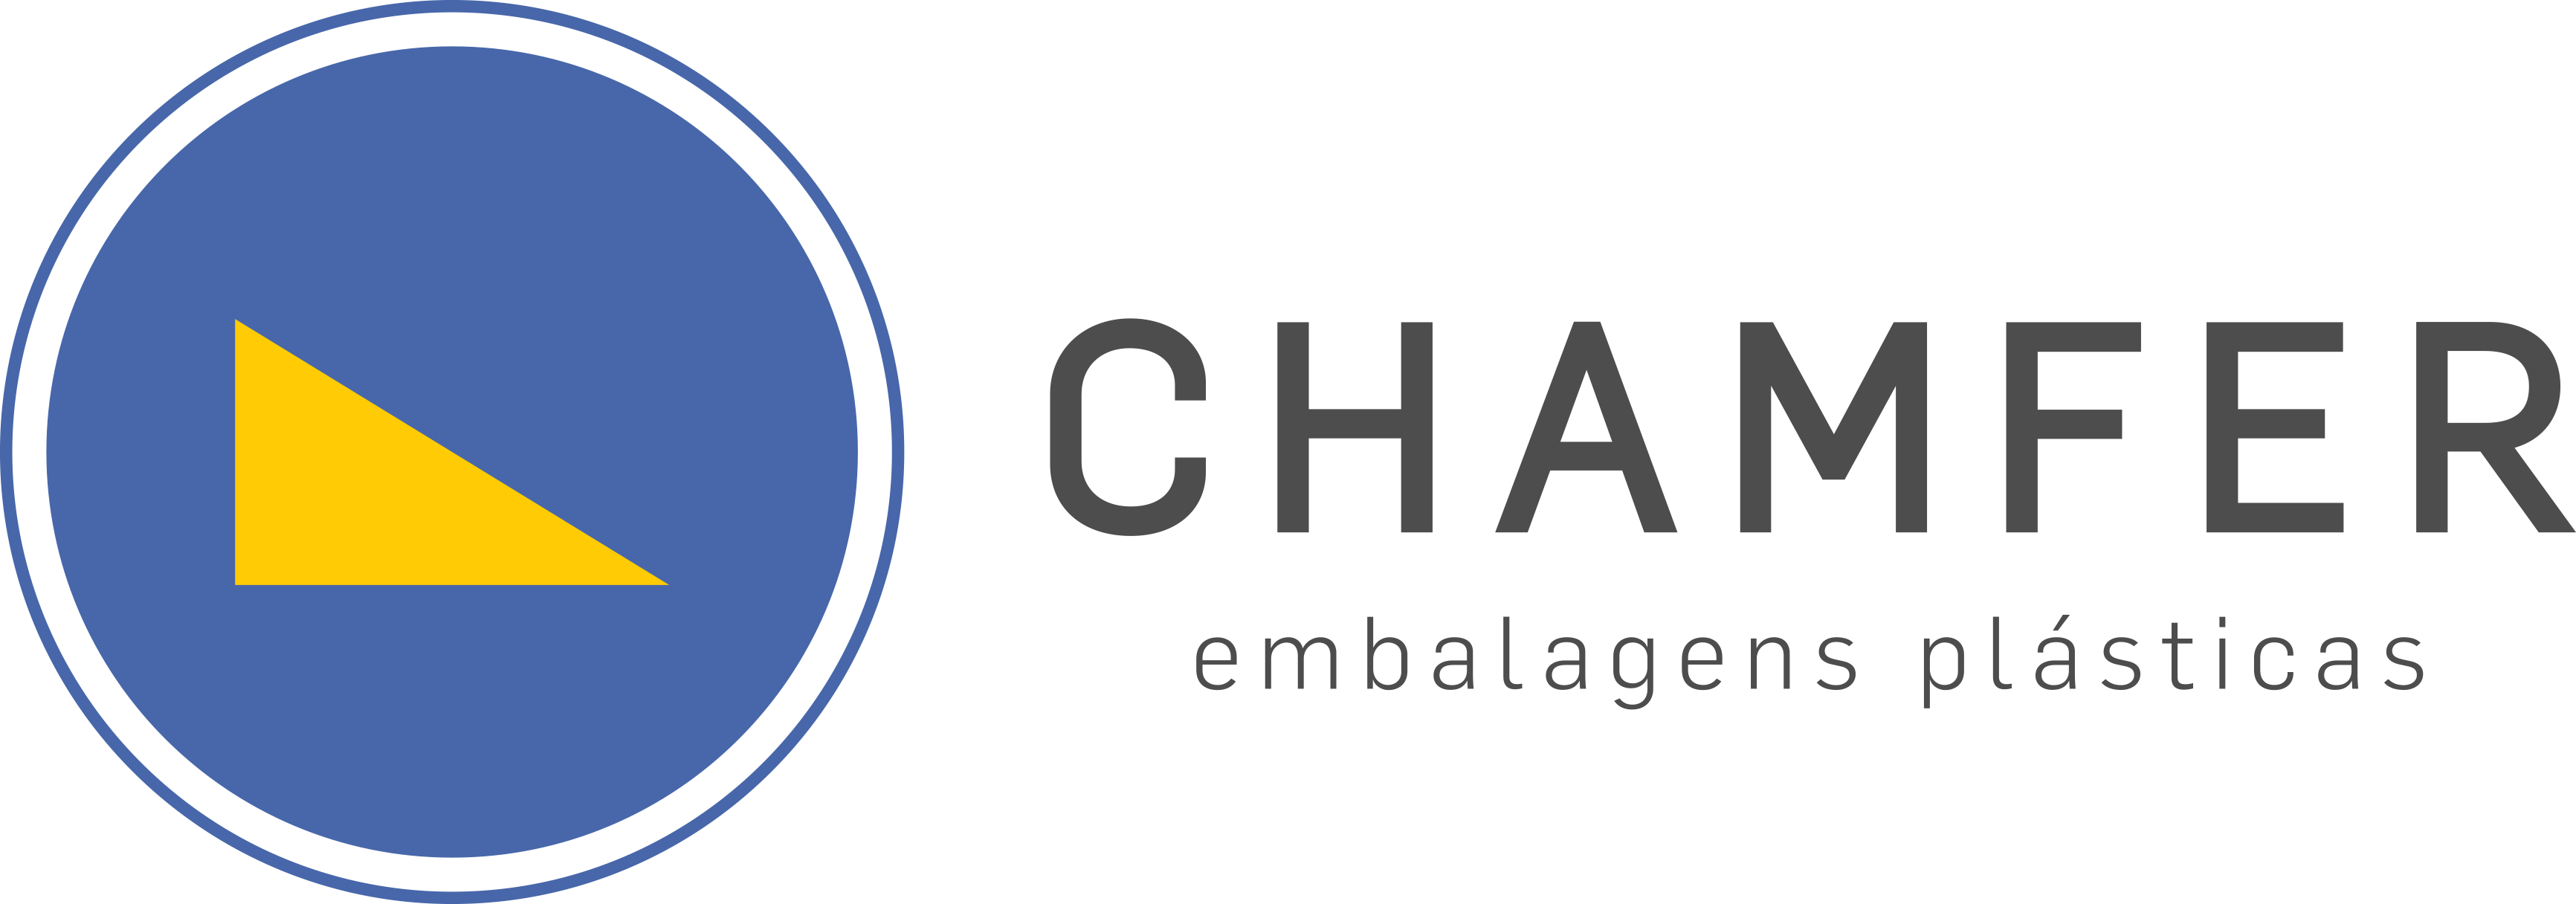 Na imagem logomarca Chamfer